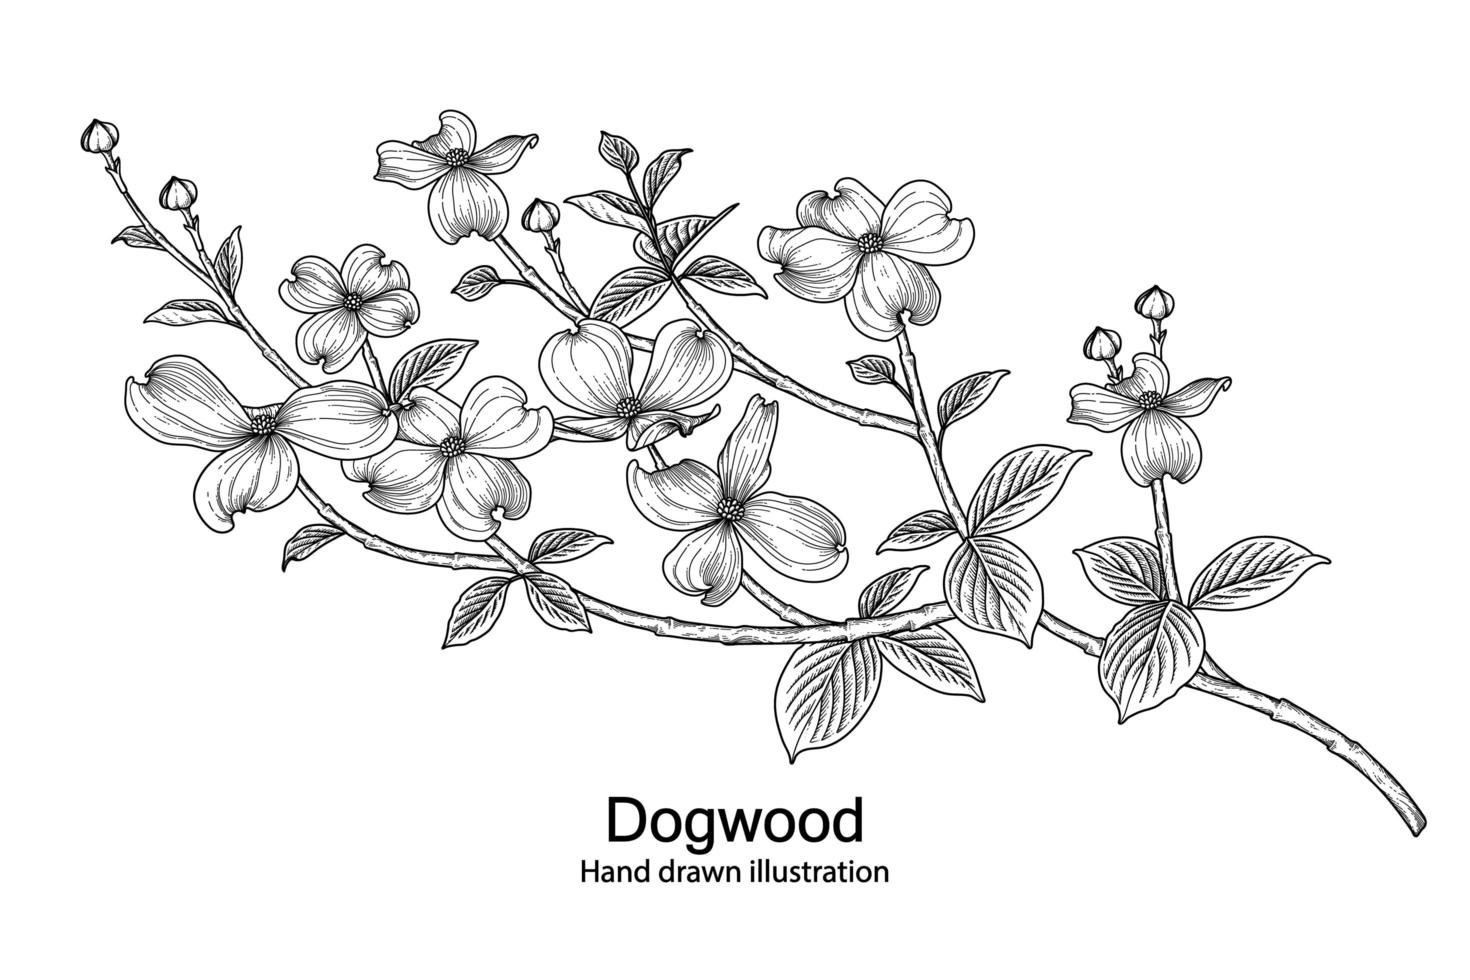 rama de cornejo con flores y hojas bocetos dibujados a mano ilustraciones botánicas vector